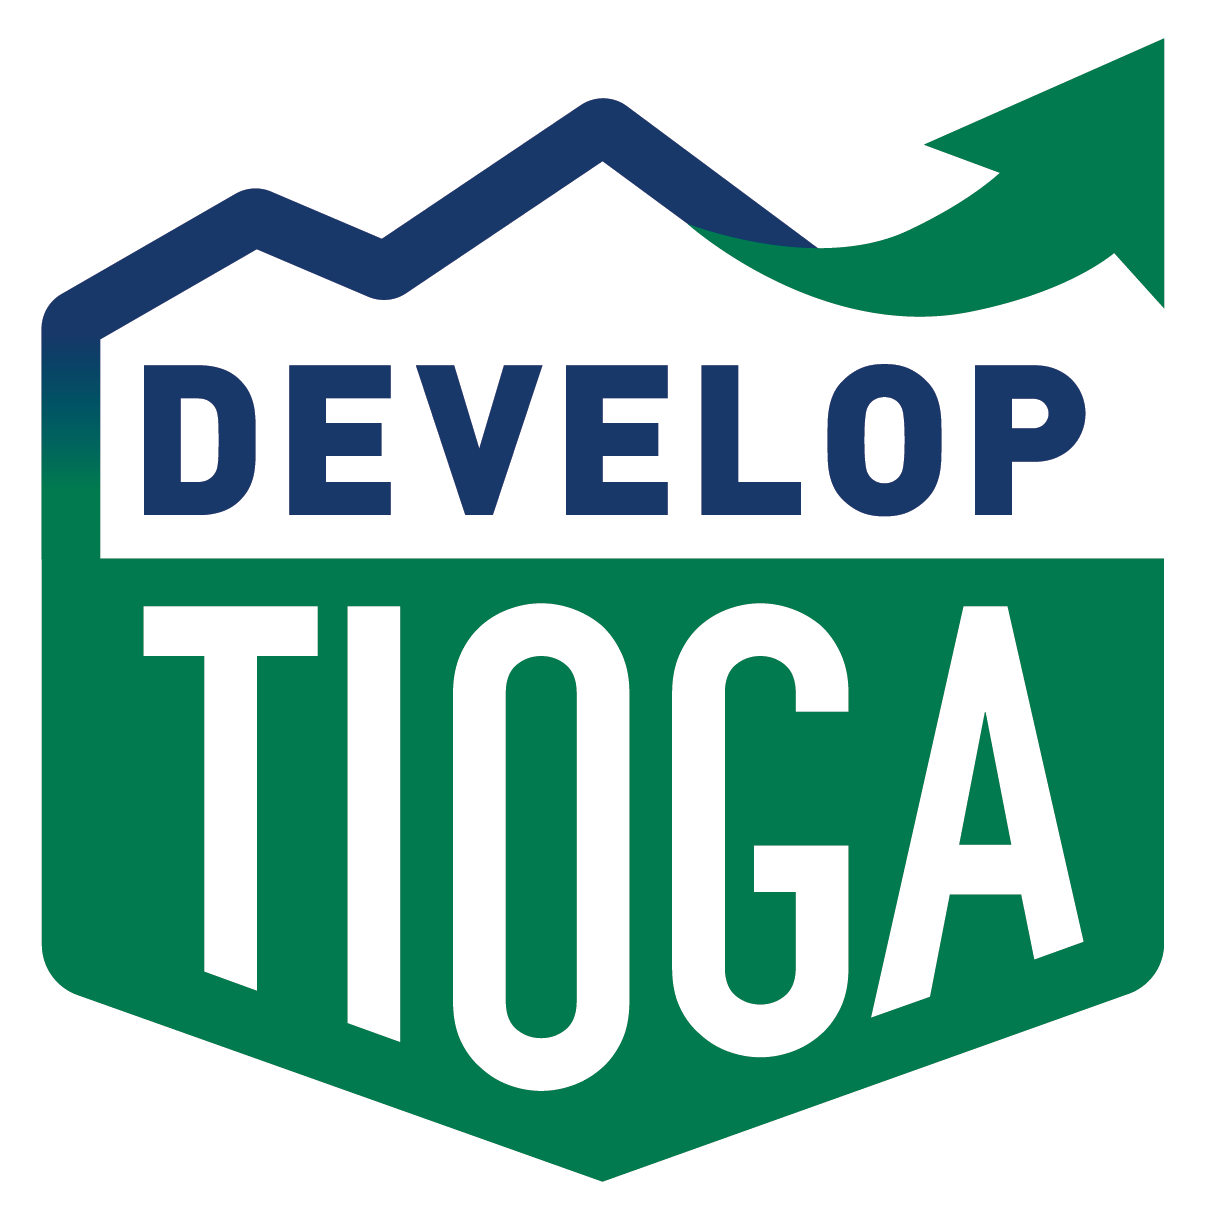 Develop Tioga - Tioga County, PA logo